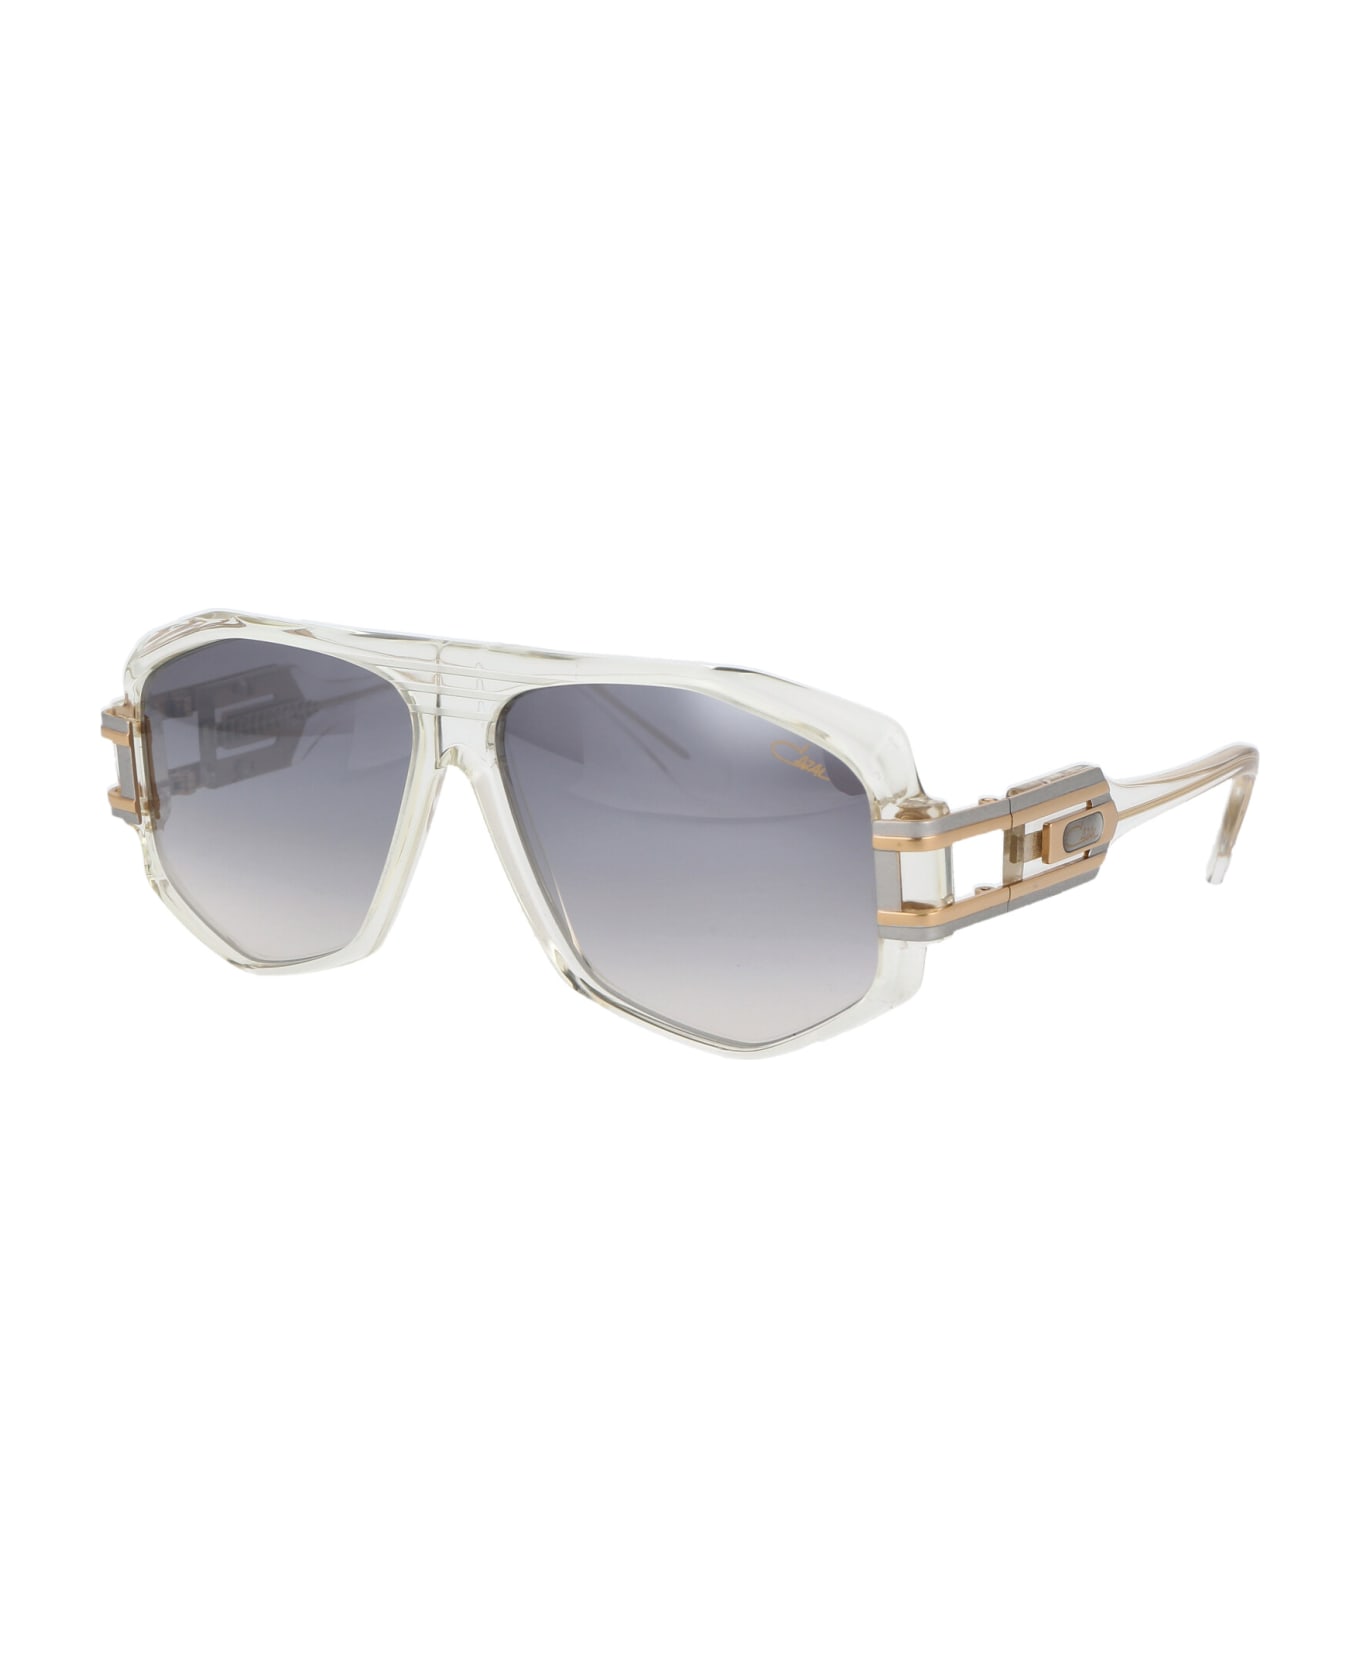 Cazal Mod. 163/3 Sunglasses - 065 CRYSTAL